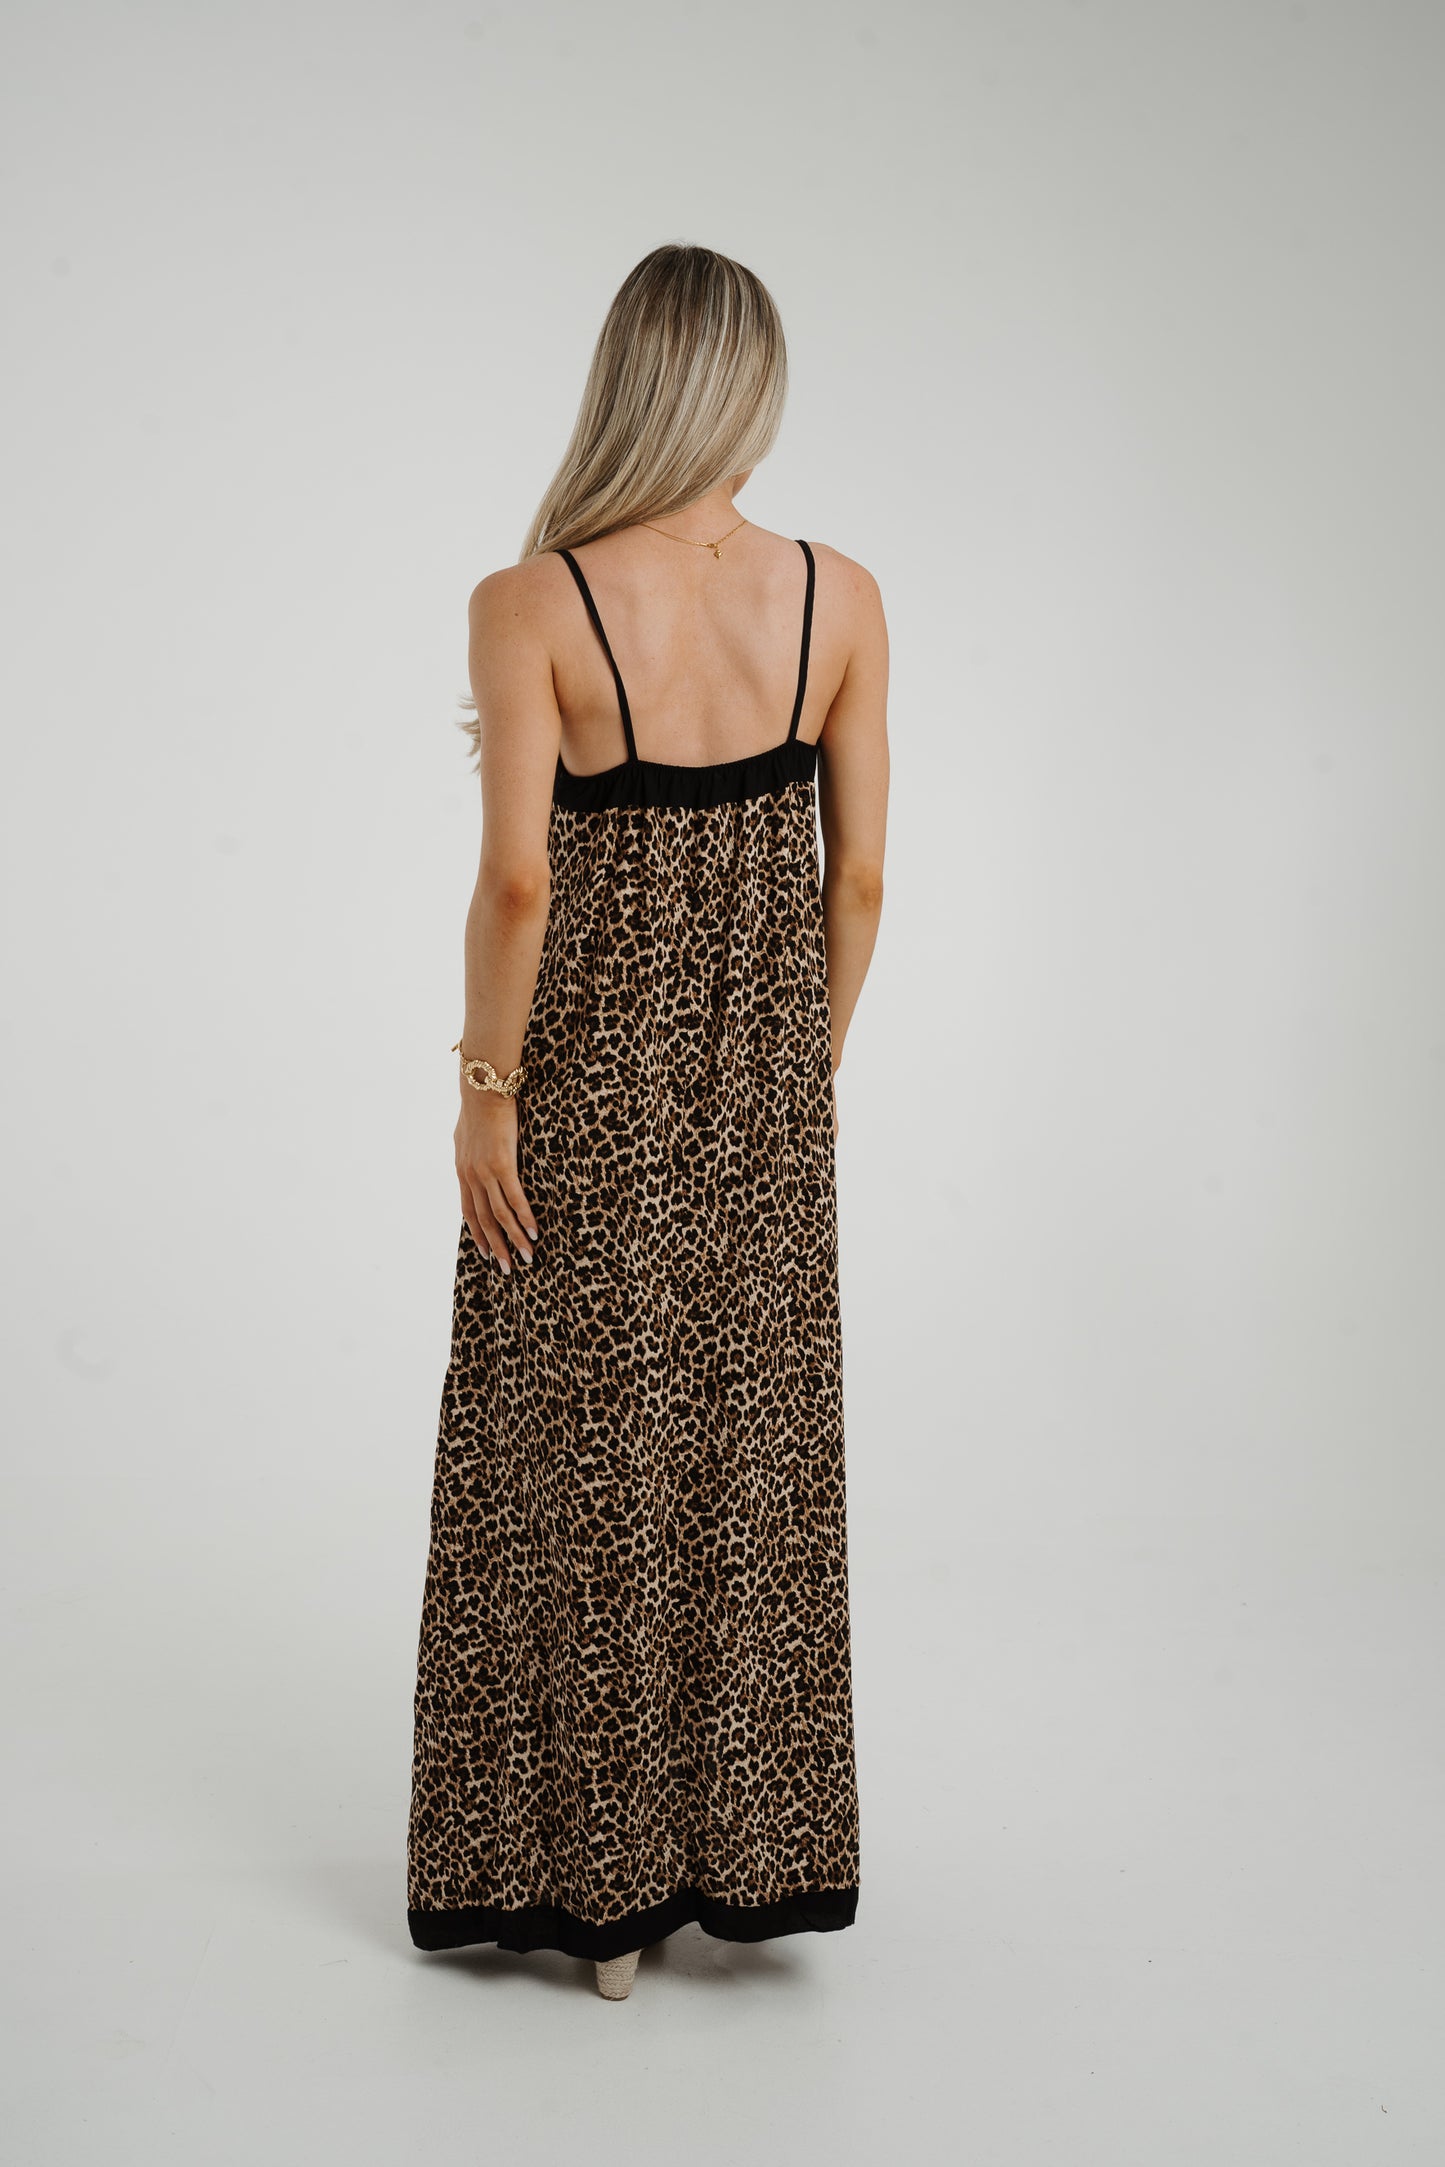 Danni Trim Maxi Dress In Leopard Print